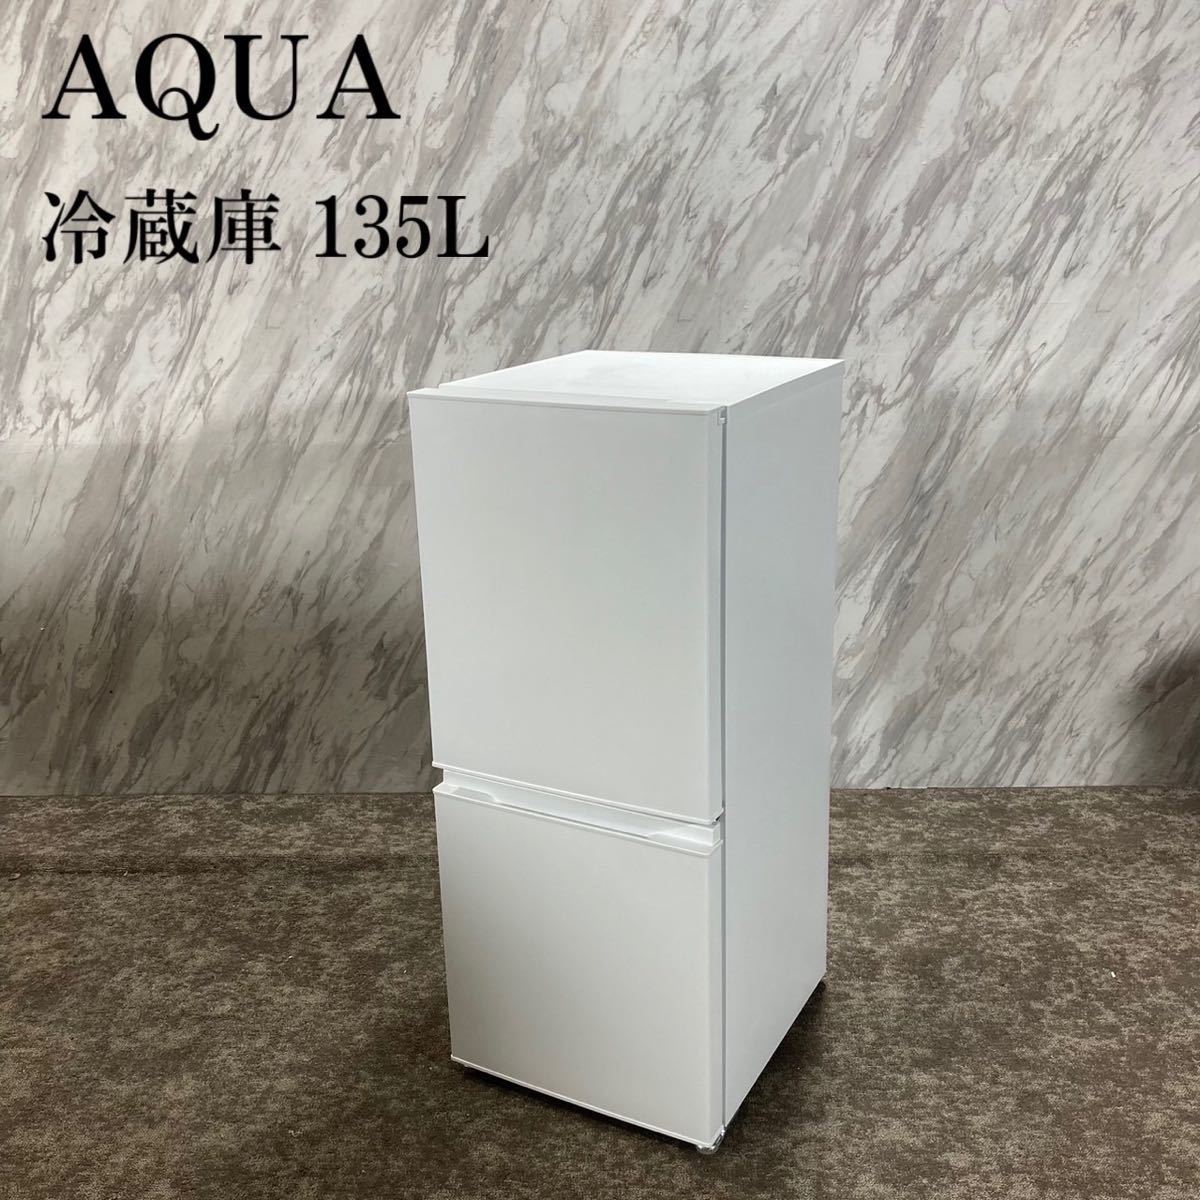 注目ショップ・ブランドのギフト 冷蔵庫 AQUA AQR-14E2(W) L001 家電